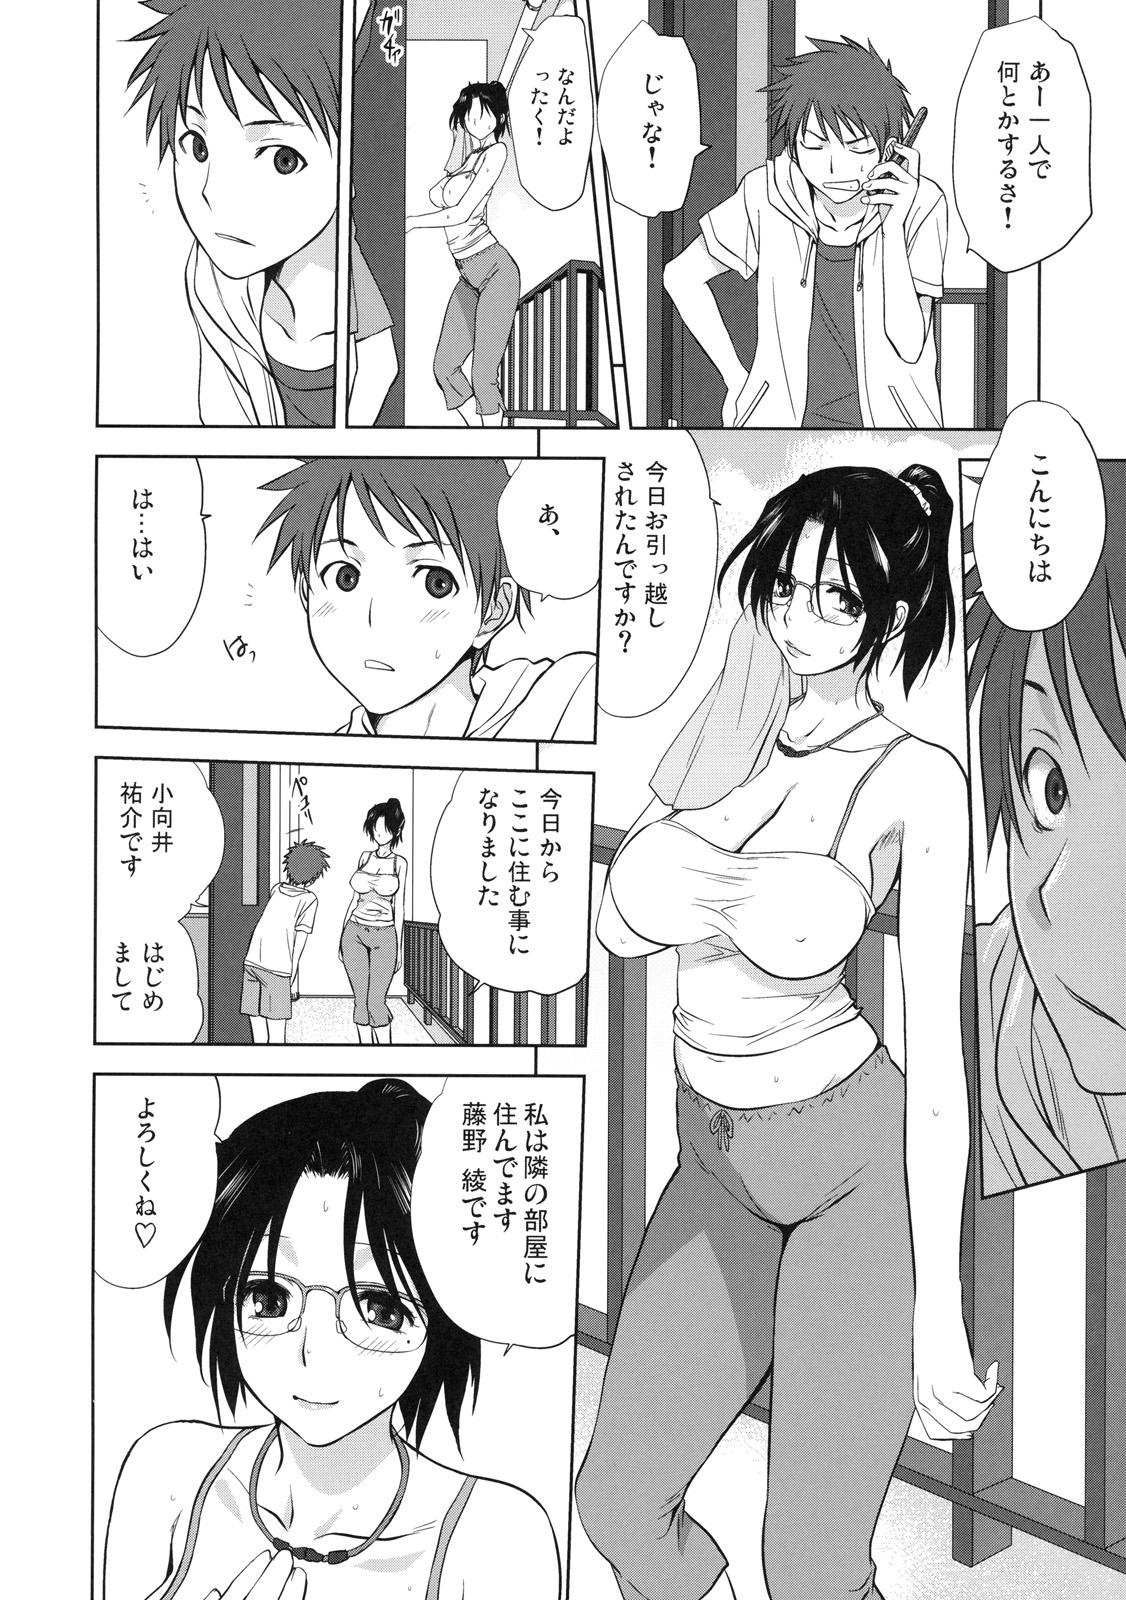 Grosso Shinzui Shinseikatsu Ver. Vol. 4 Porno Amateur - Page 7